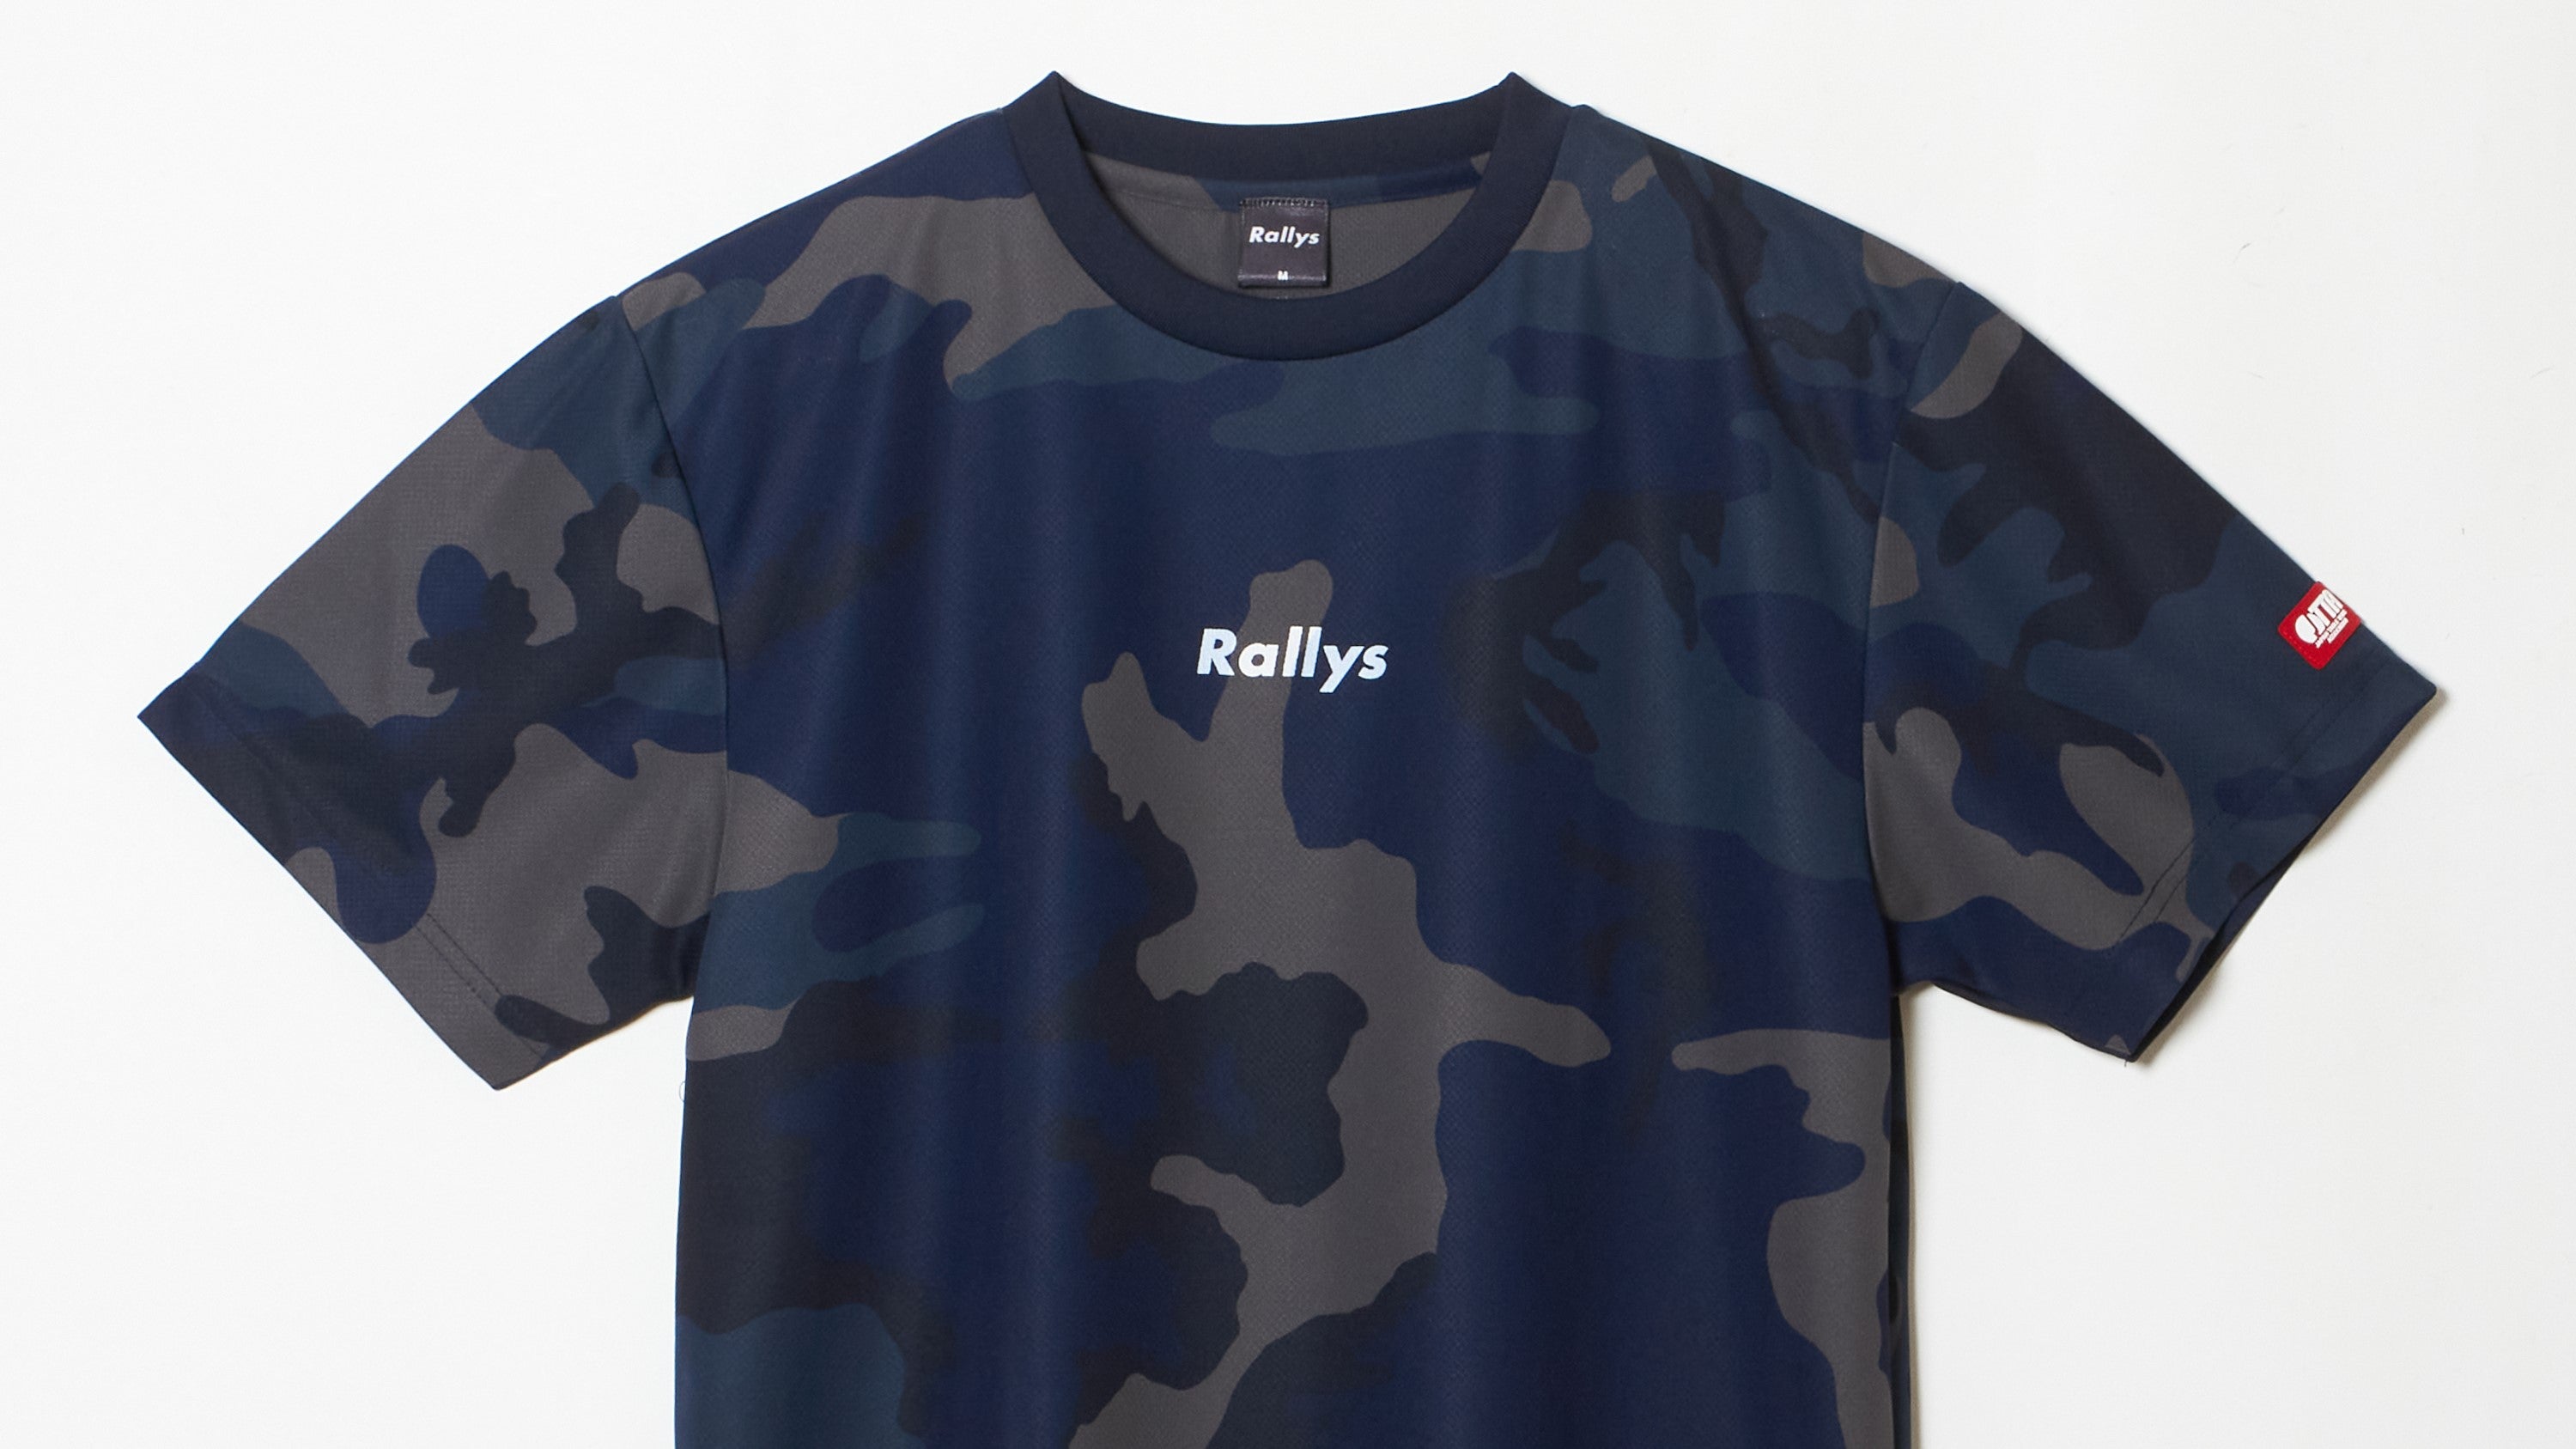 RallysTシャツ価格改定のお知らせ